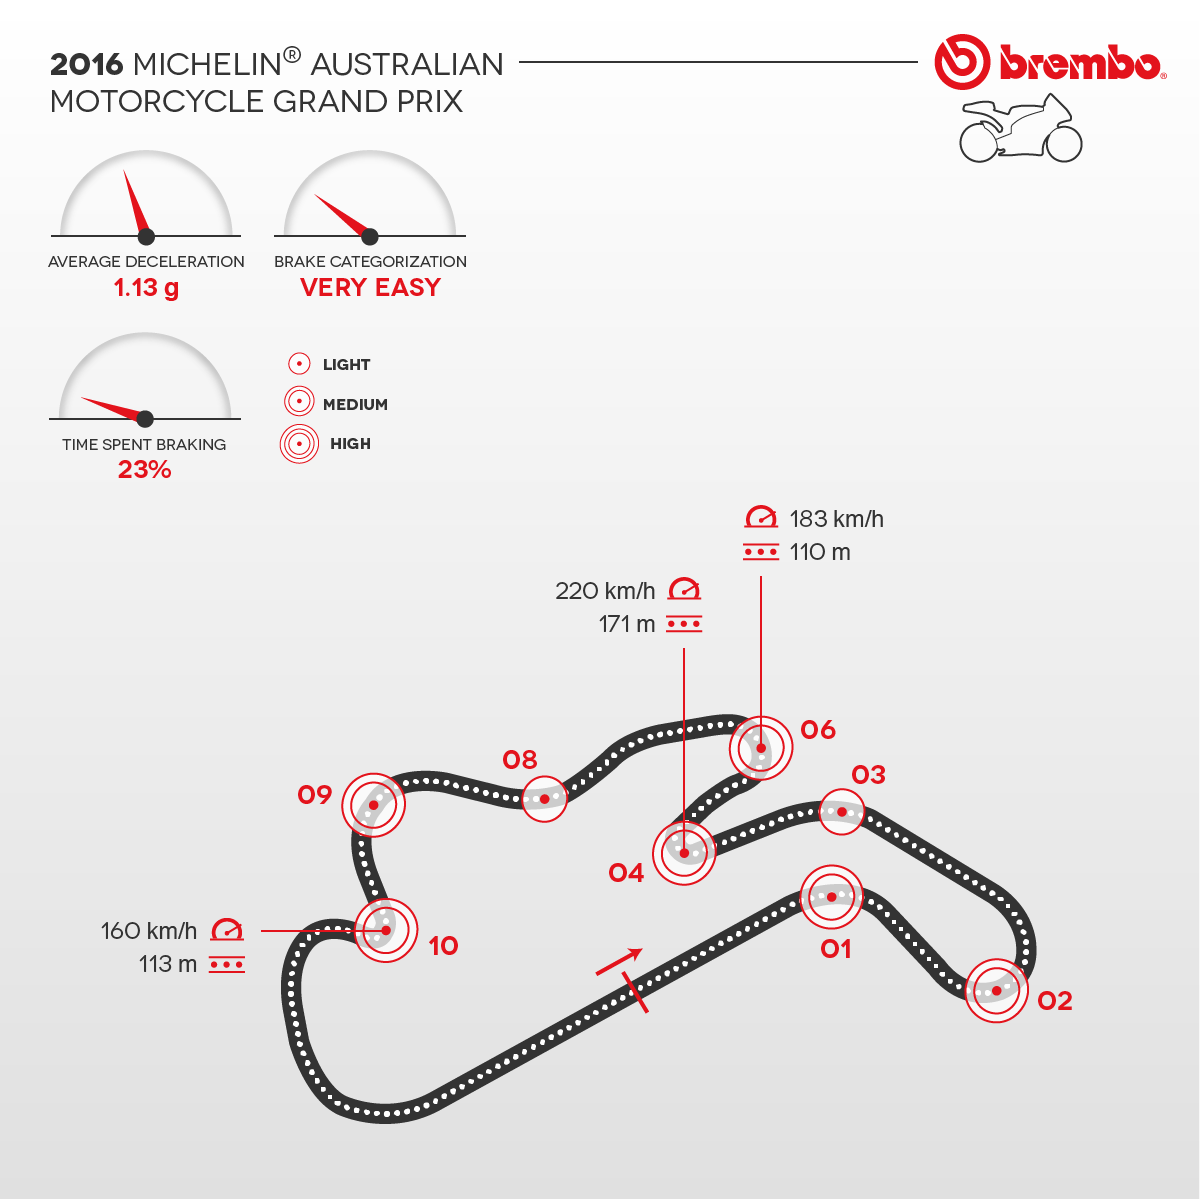 Rappresentazione dettagliata del circuito d'Australia 2016 con dettaglio curve